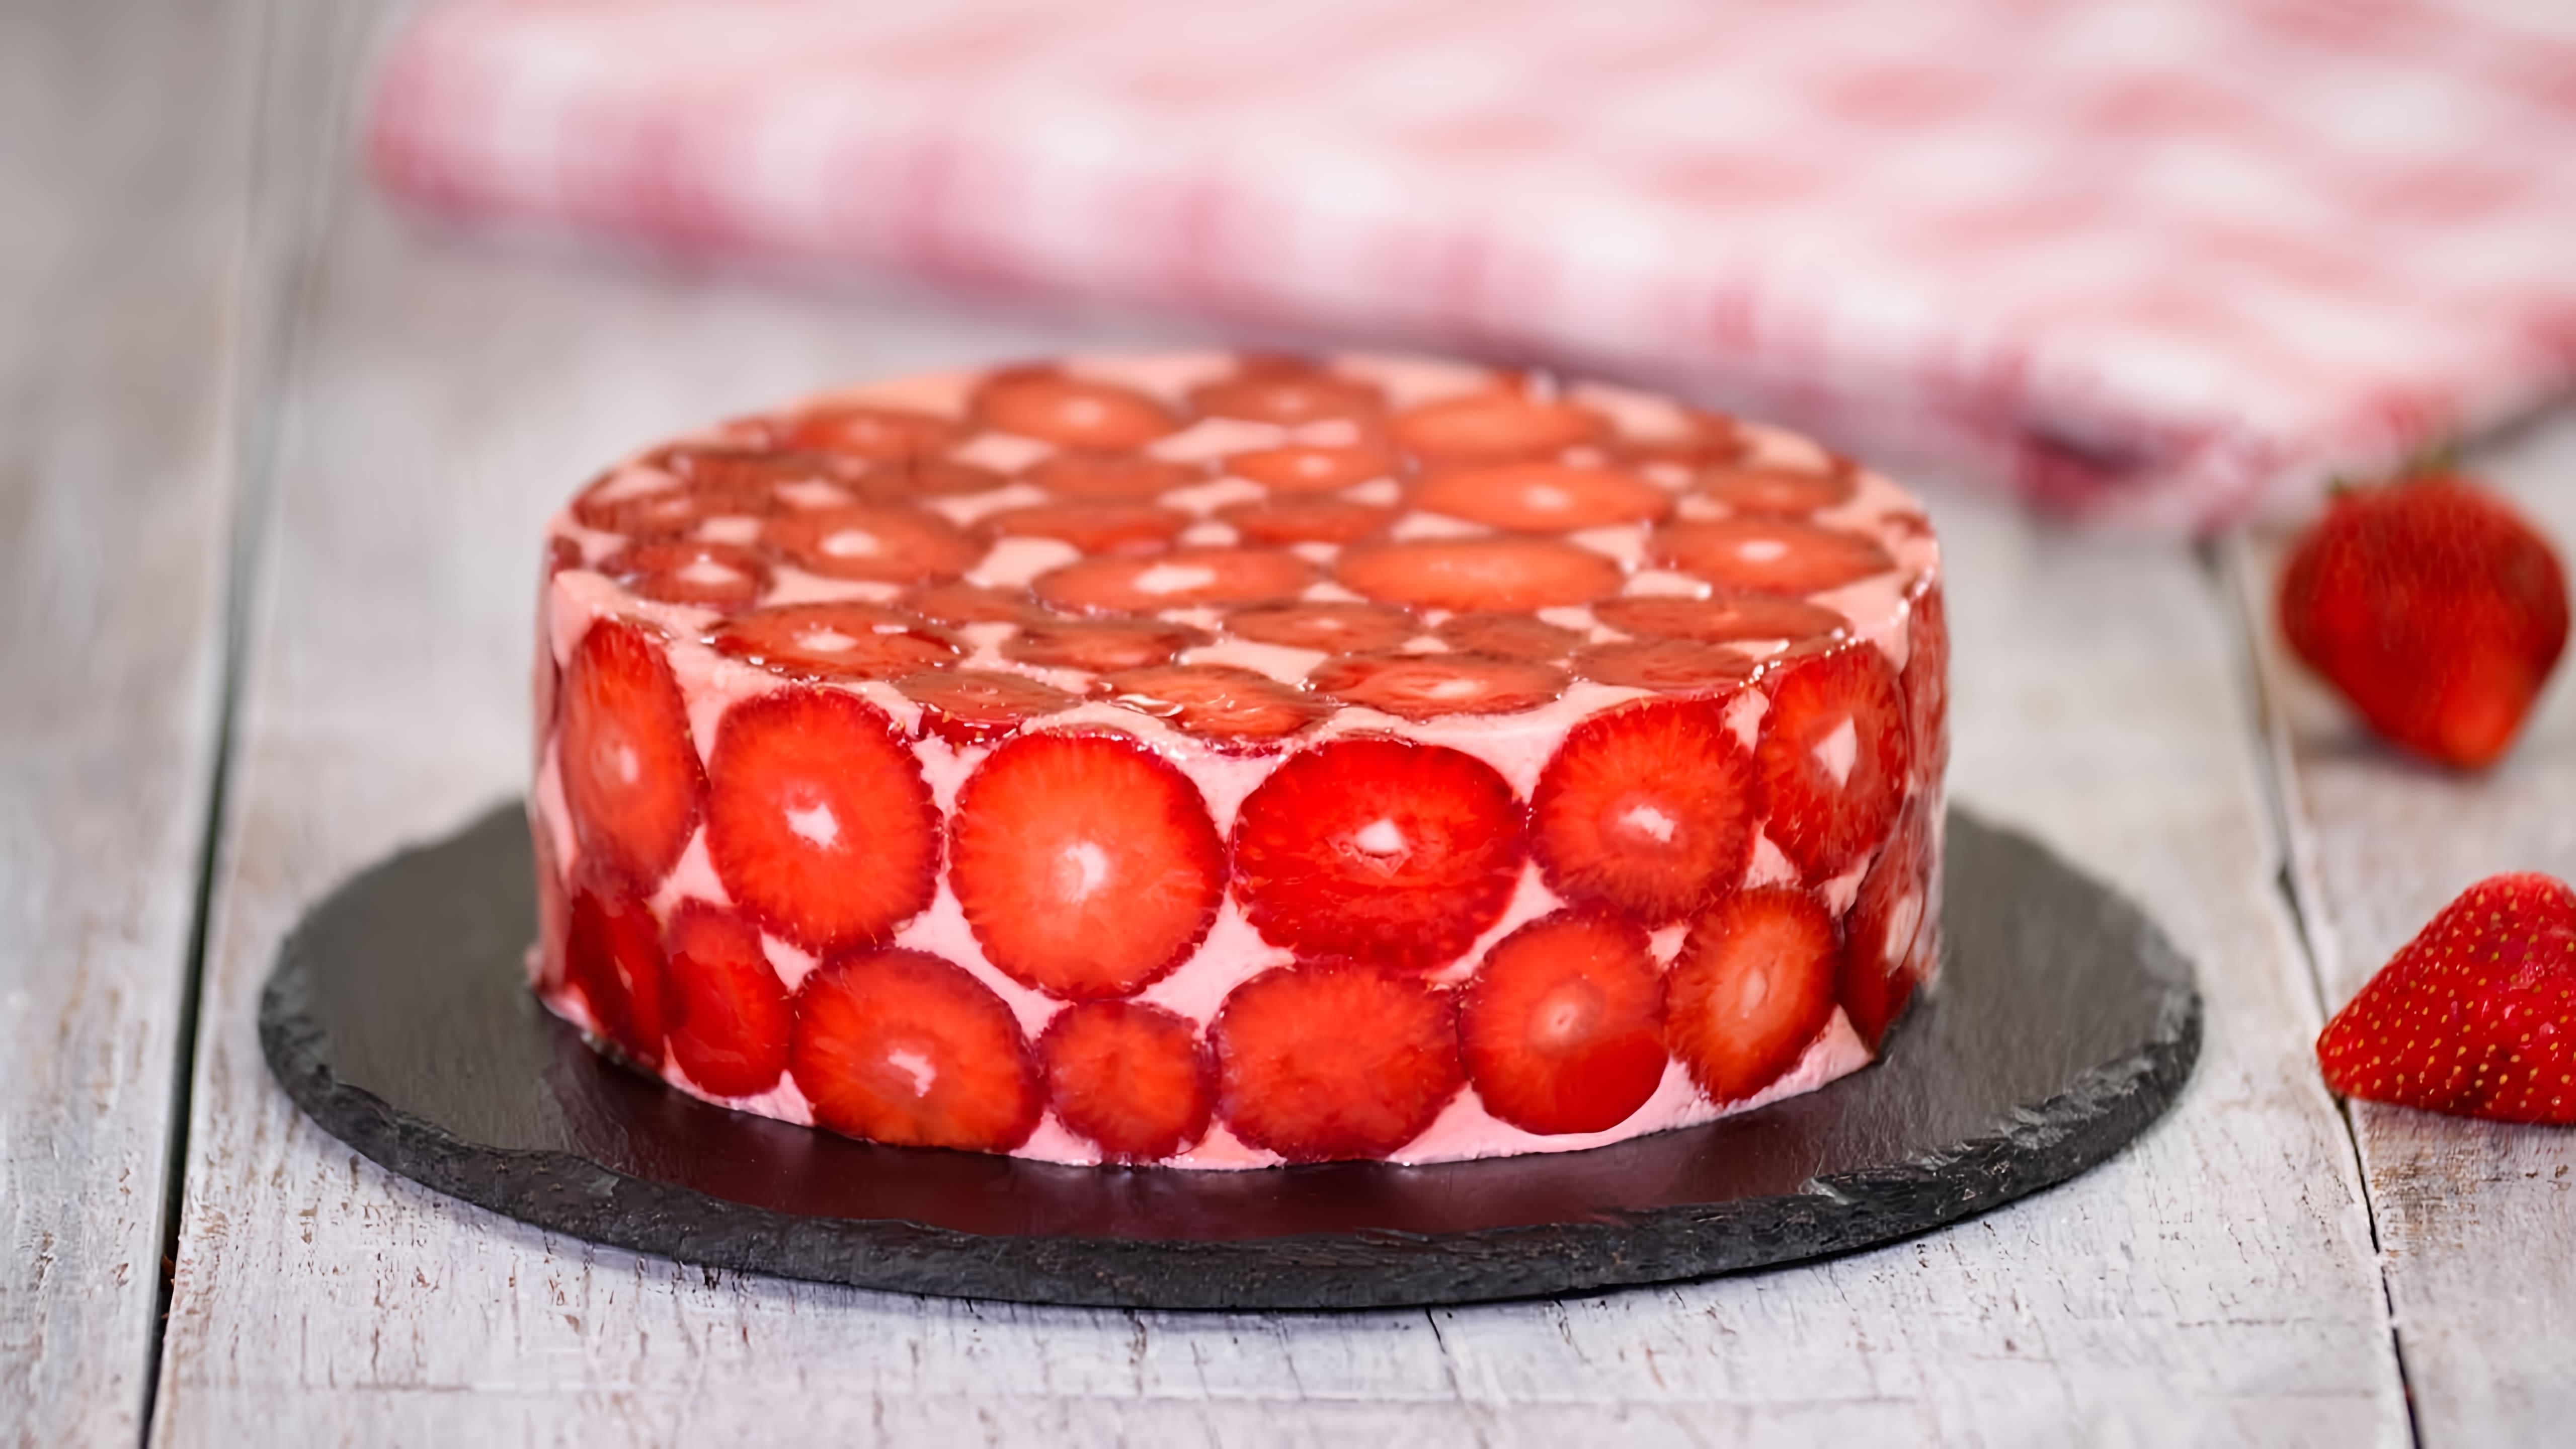 Клубничный муссовый торт - это десерт, который готовится из свежих ягод клубники, сливок и шоколада